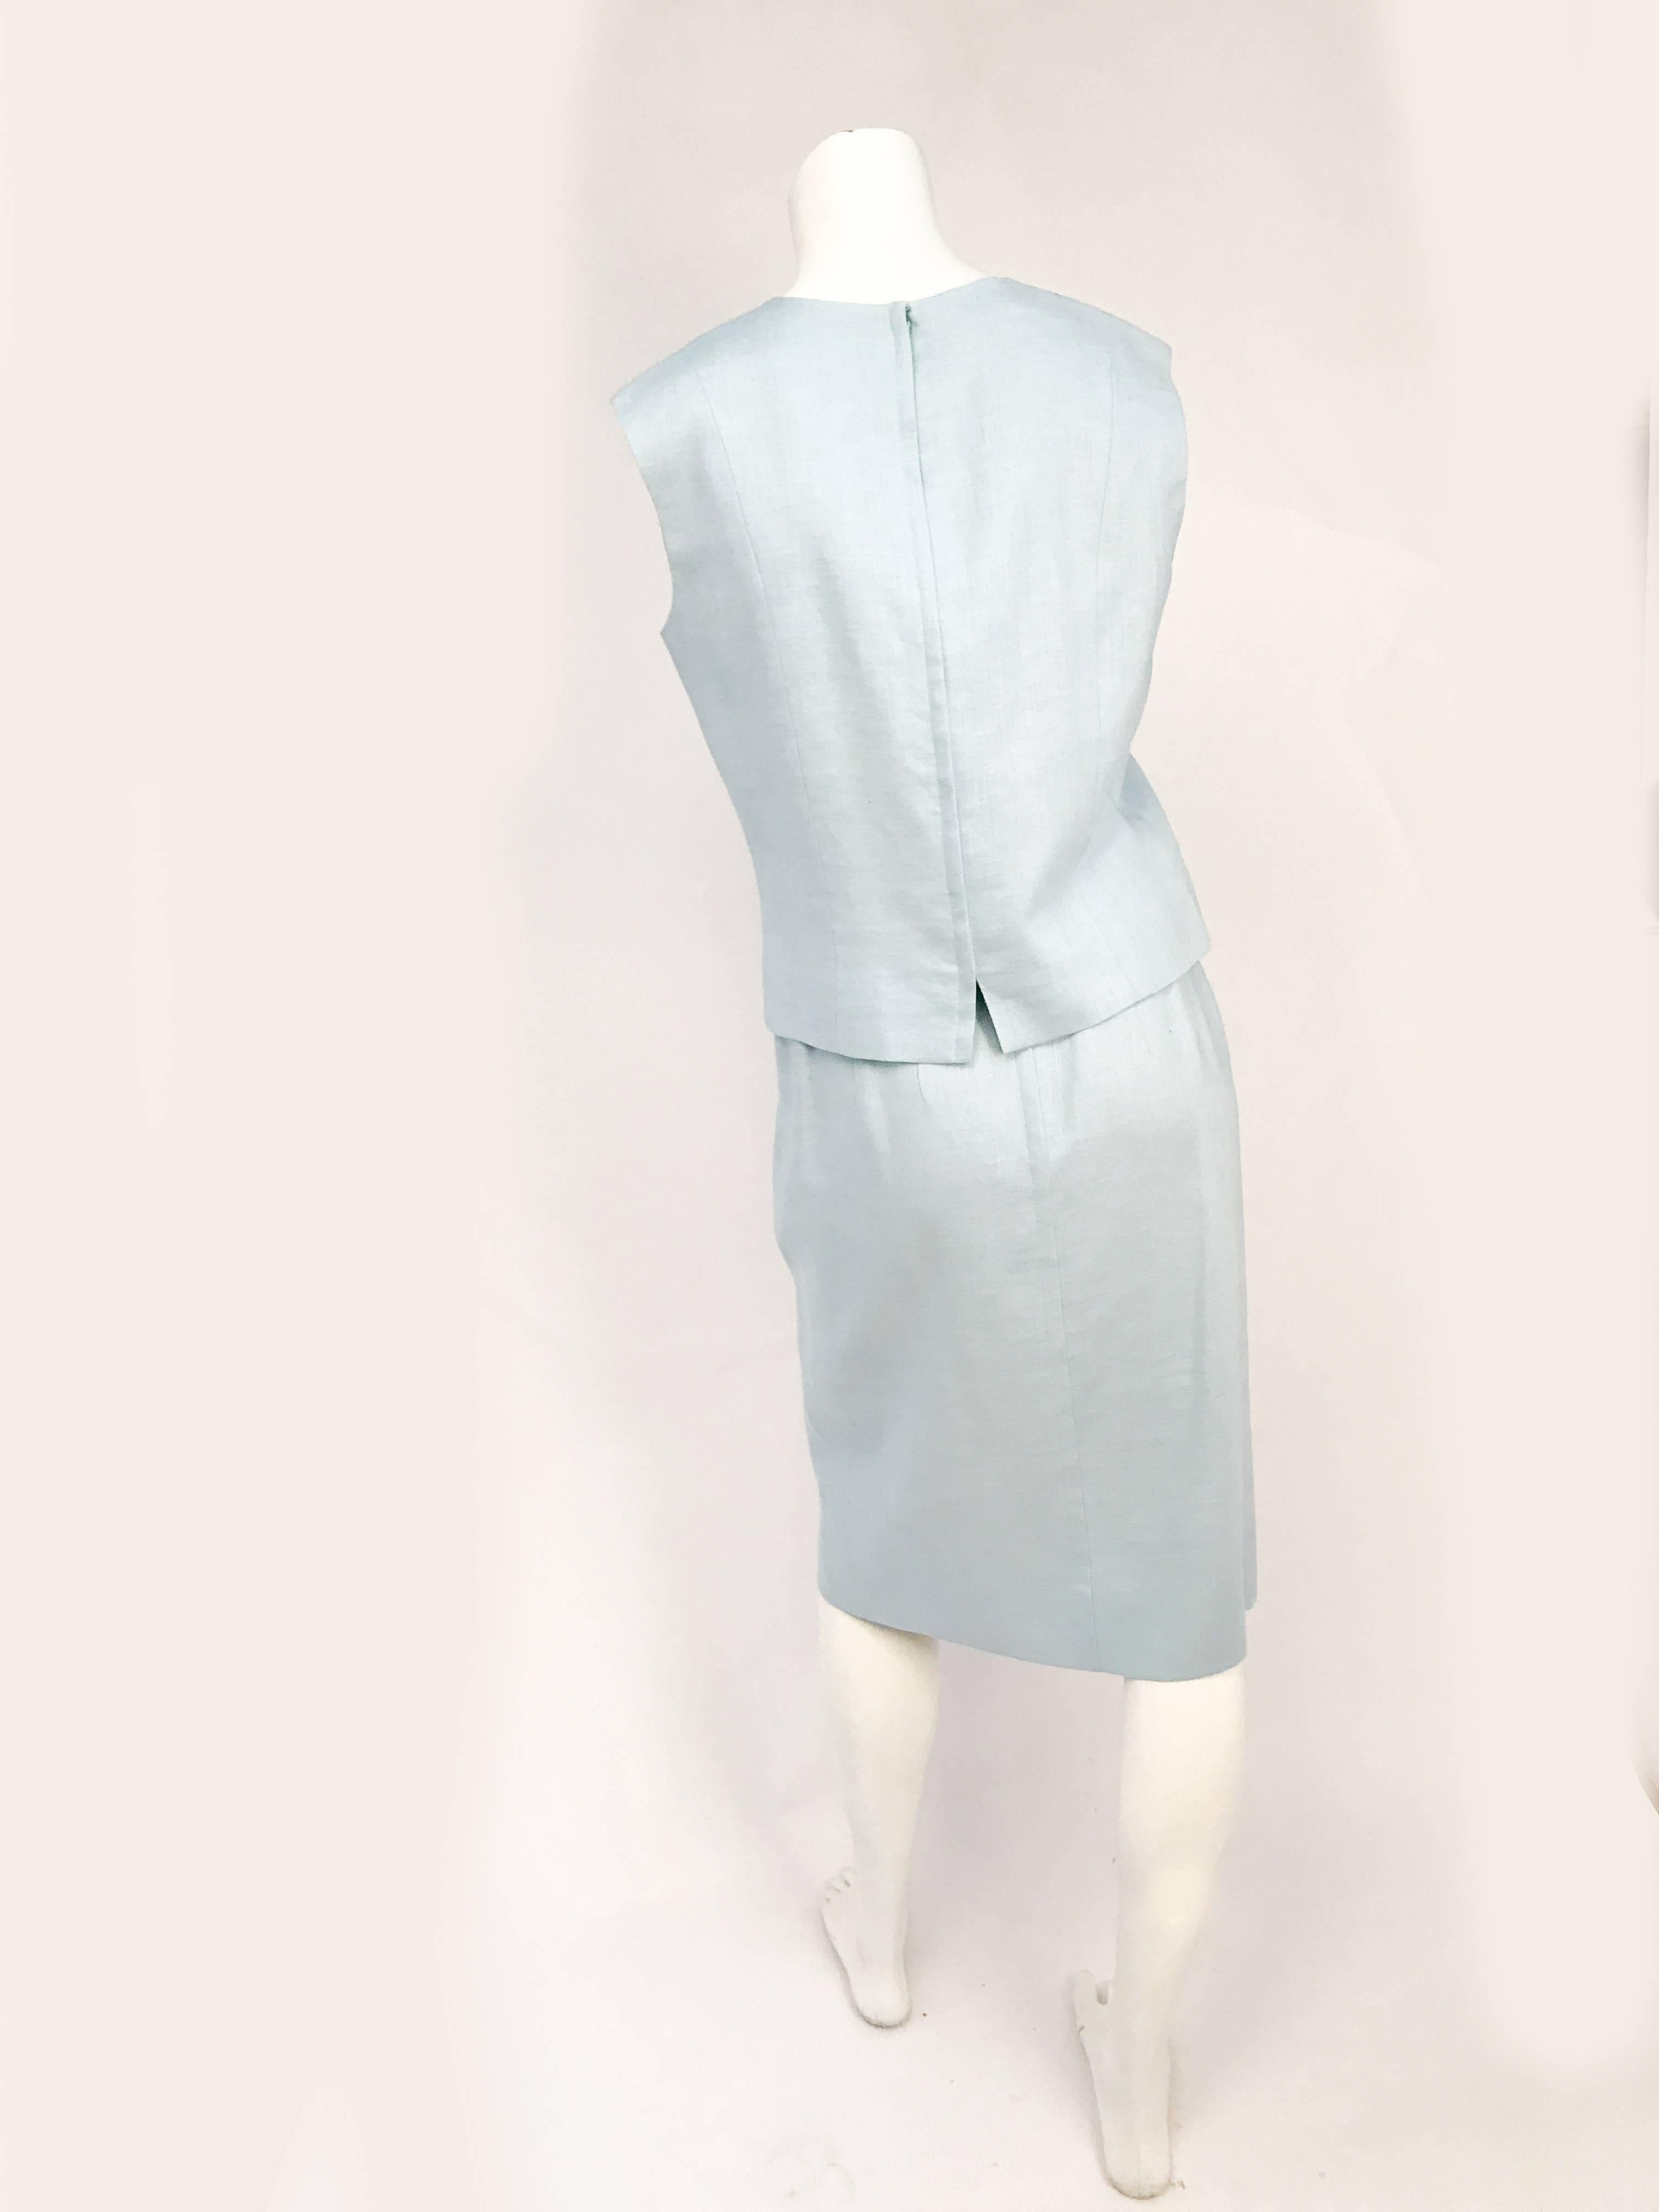 1960s Light Blue Linen Skirt/Top Set. Light blue linen skirt/ sleeveless top set with hand-covered buttons along the neckline and center-front.  